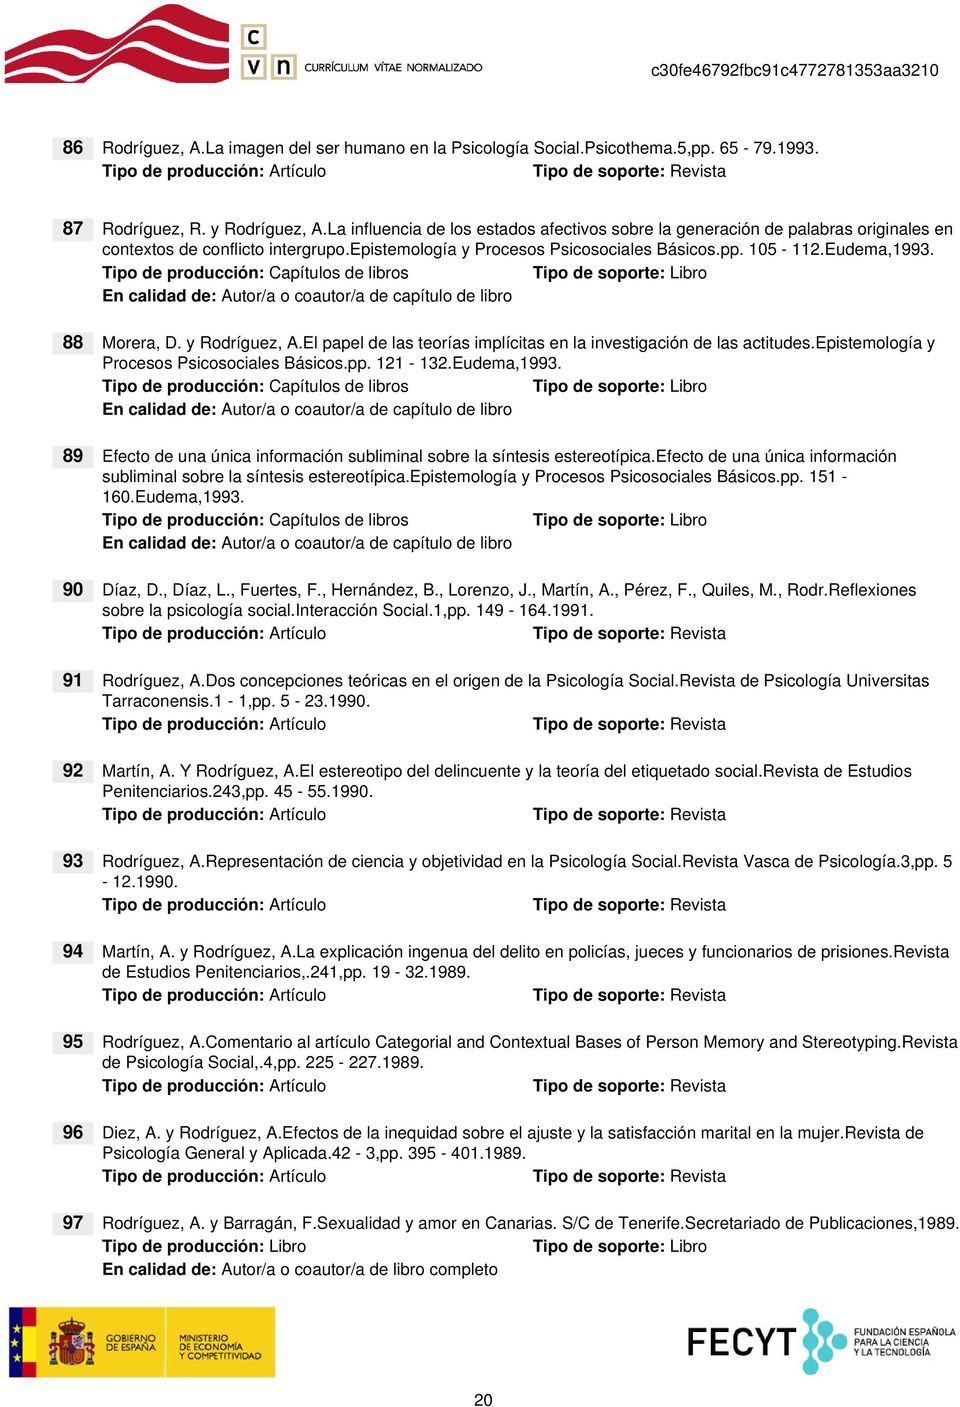 88 Morera, D. y Rodríguez, A.El papel de las teorías implícitas en la investigación de las actitudes.epistemología y Procesos Psicosociales Básicos.pp. 121-132.Eudema,1993.